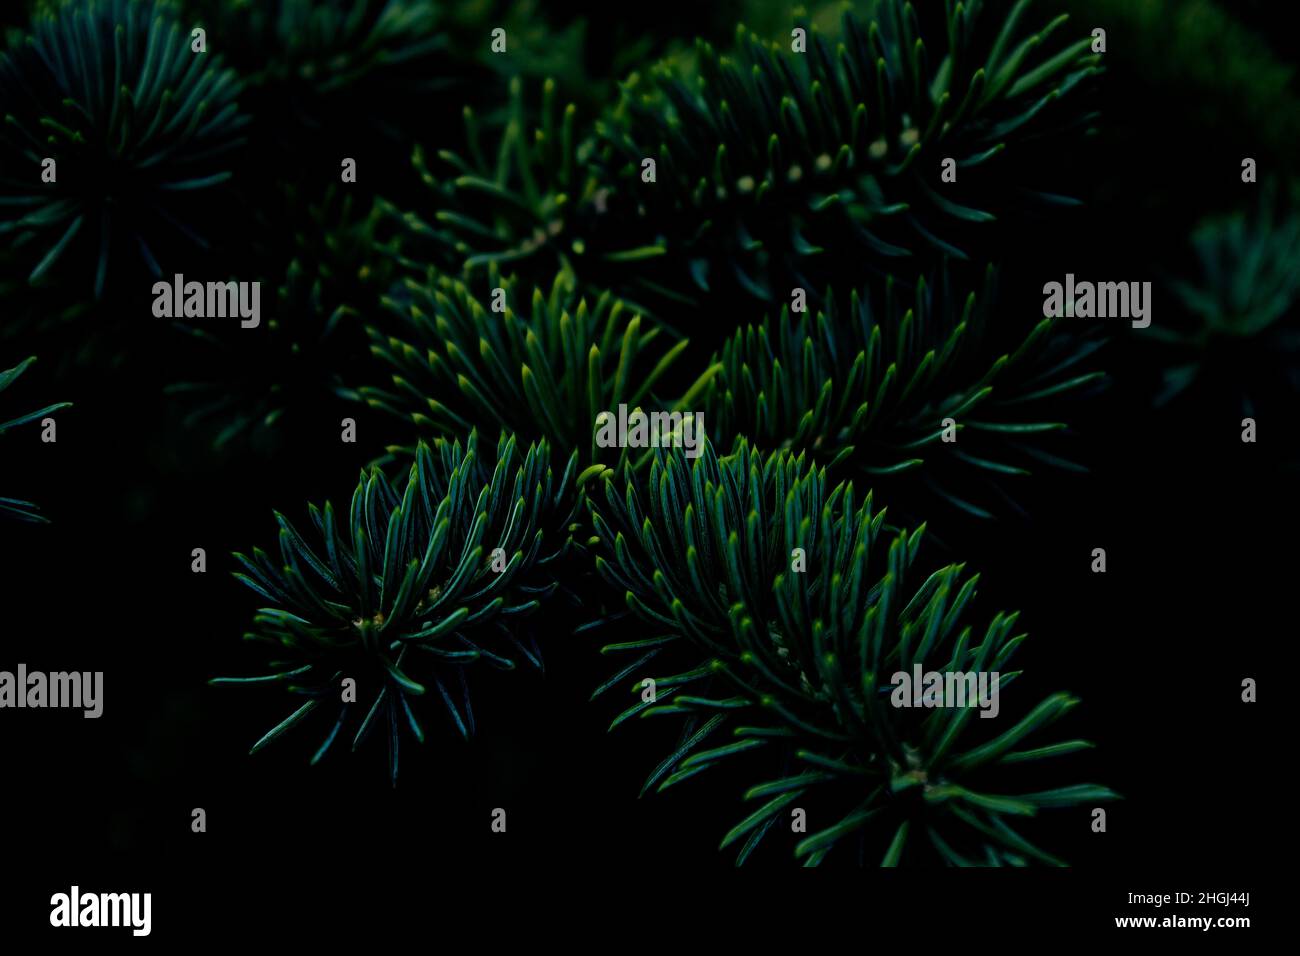 Stachelige Zweige von Kiefer oder Fichte, Tanne. Flauschige, leuchtend grüne Nadelfilzaufnahme auf dunklem Hintergrund. Floraler Hintergrund für Design. Stockfoto